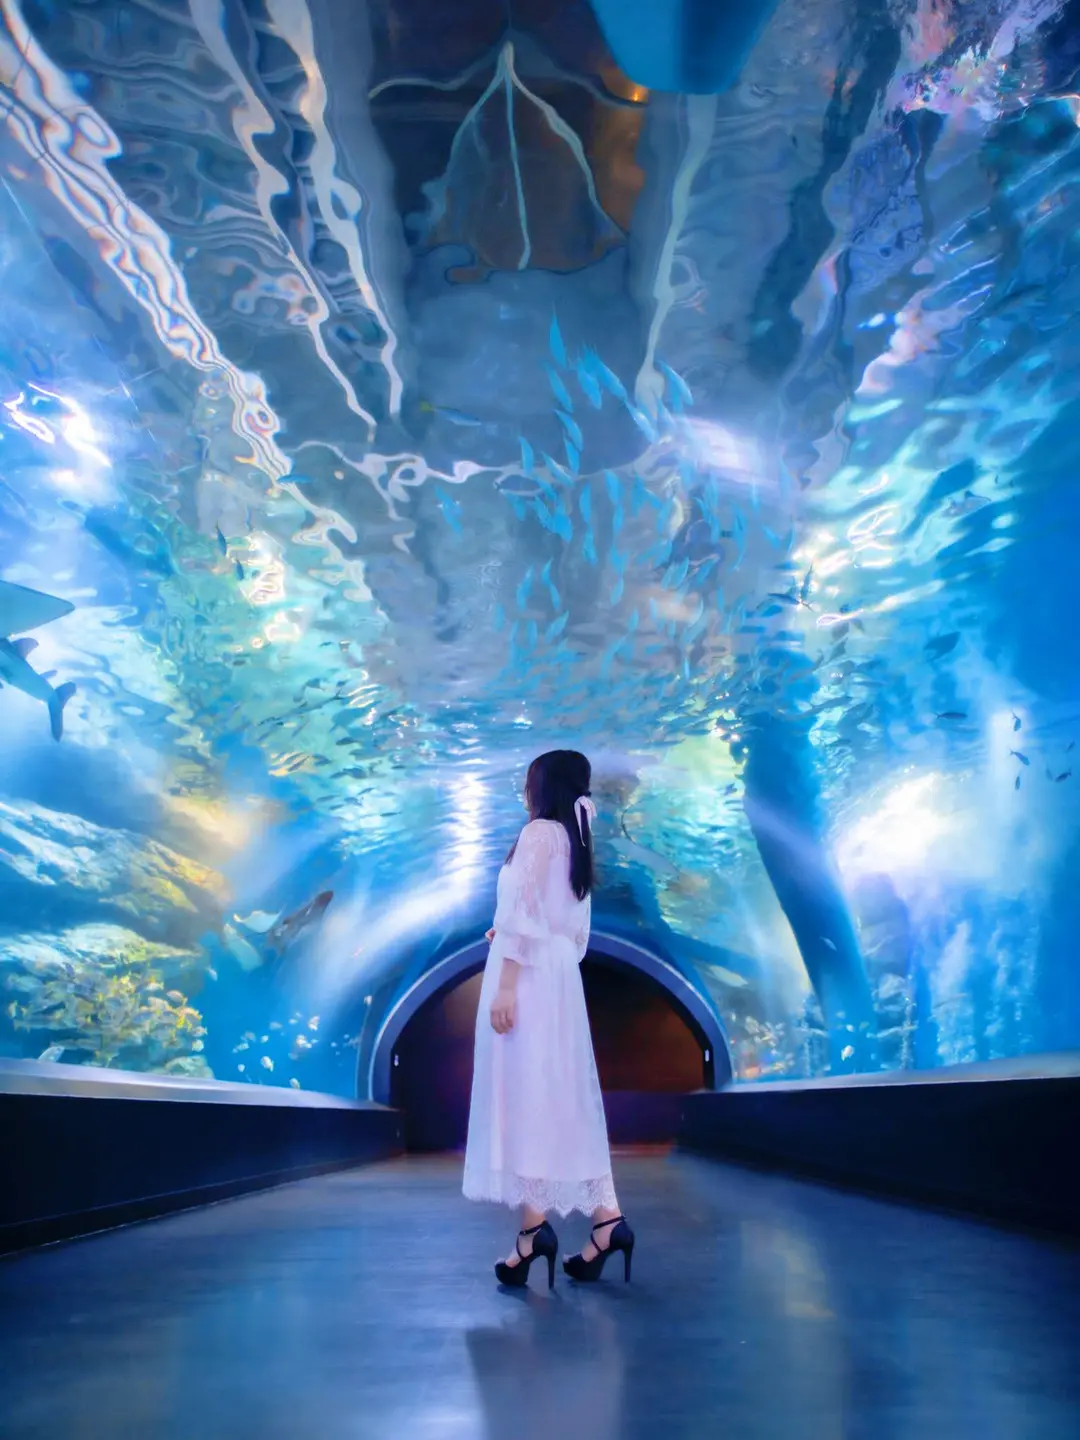 【瞬きを忘れるほどの美しさ】アクアパーク品川の海中トンネルの画像